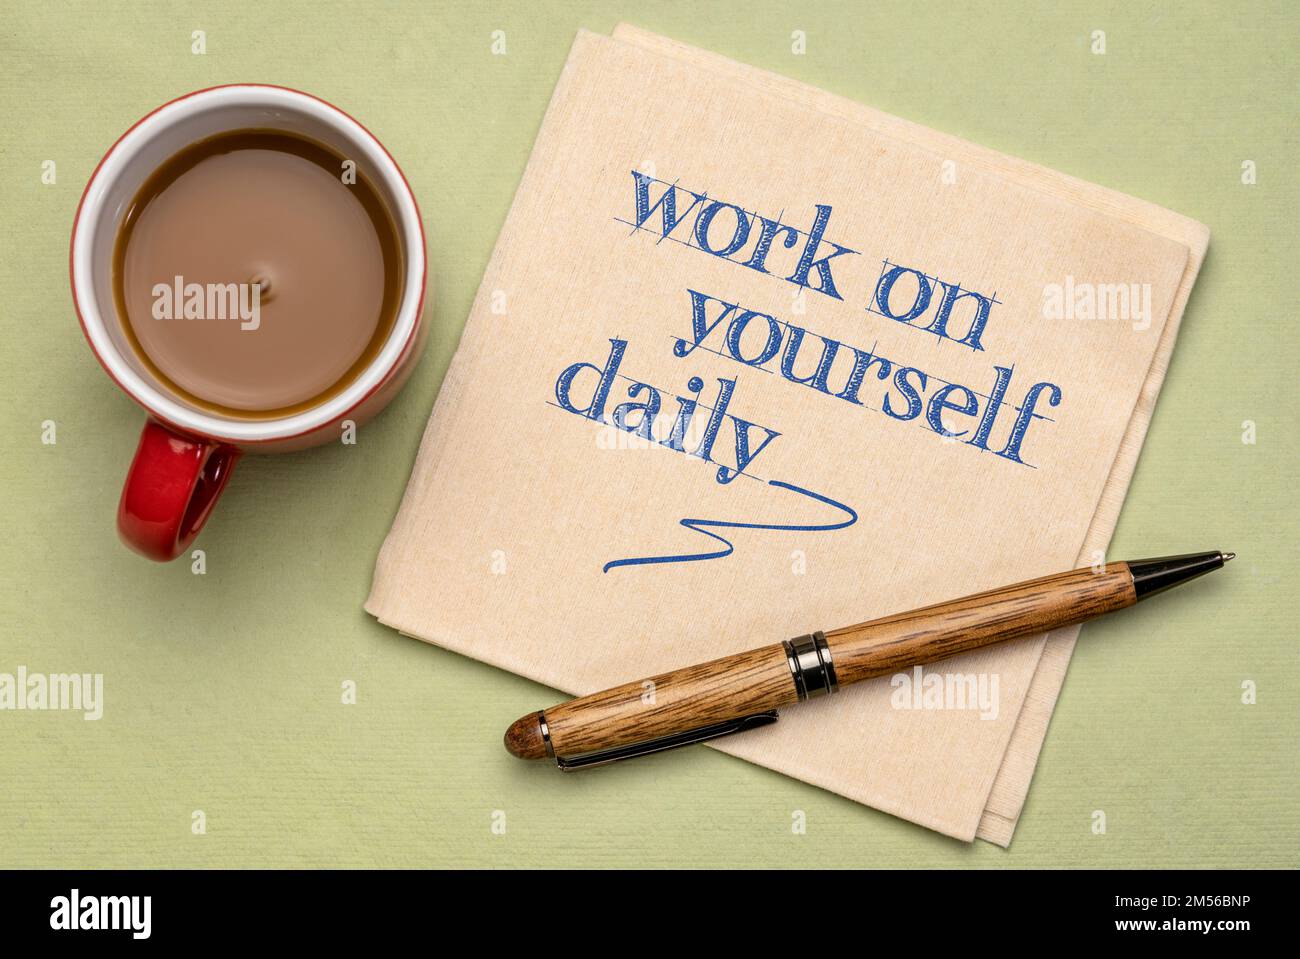 Arbeiten Sie täglich an sich selbst – inspirierende Ratschläge oder Erinnerungen an eine Serviette mit Kaffee, Selbstverbesserung und persönlichem Entwicklungskonzept Stockfoto